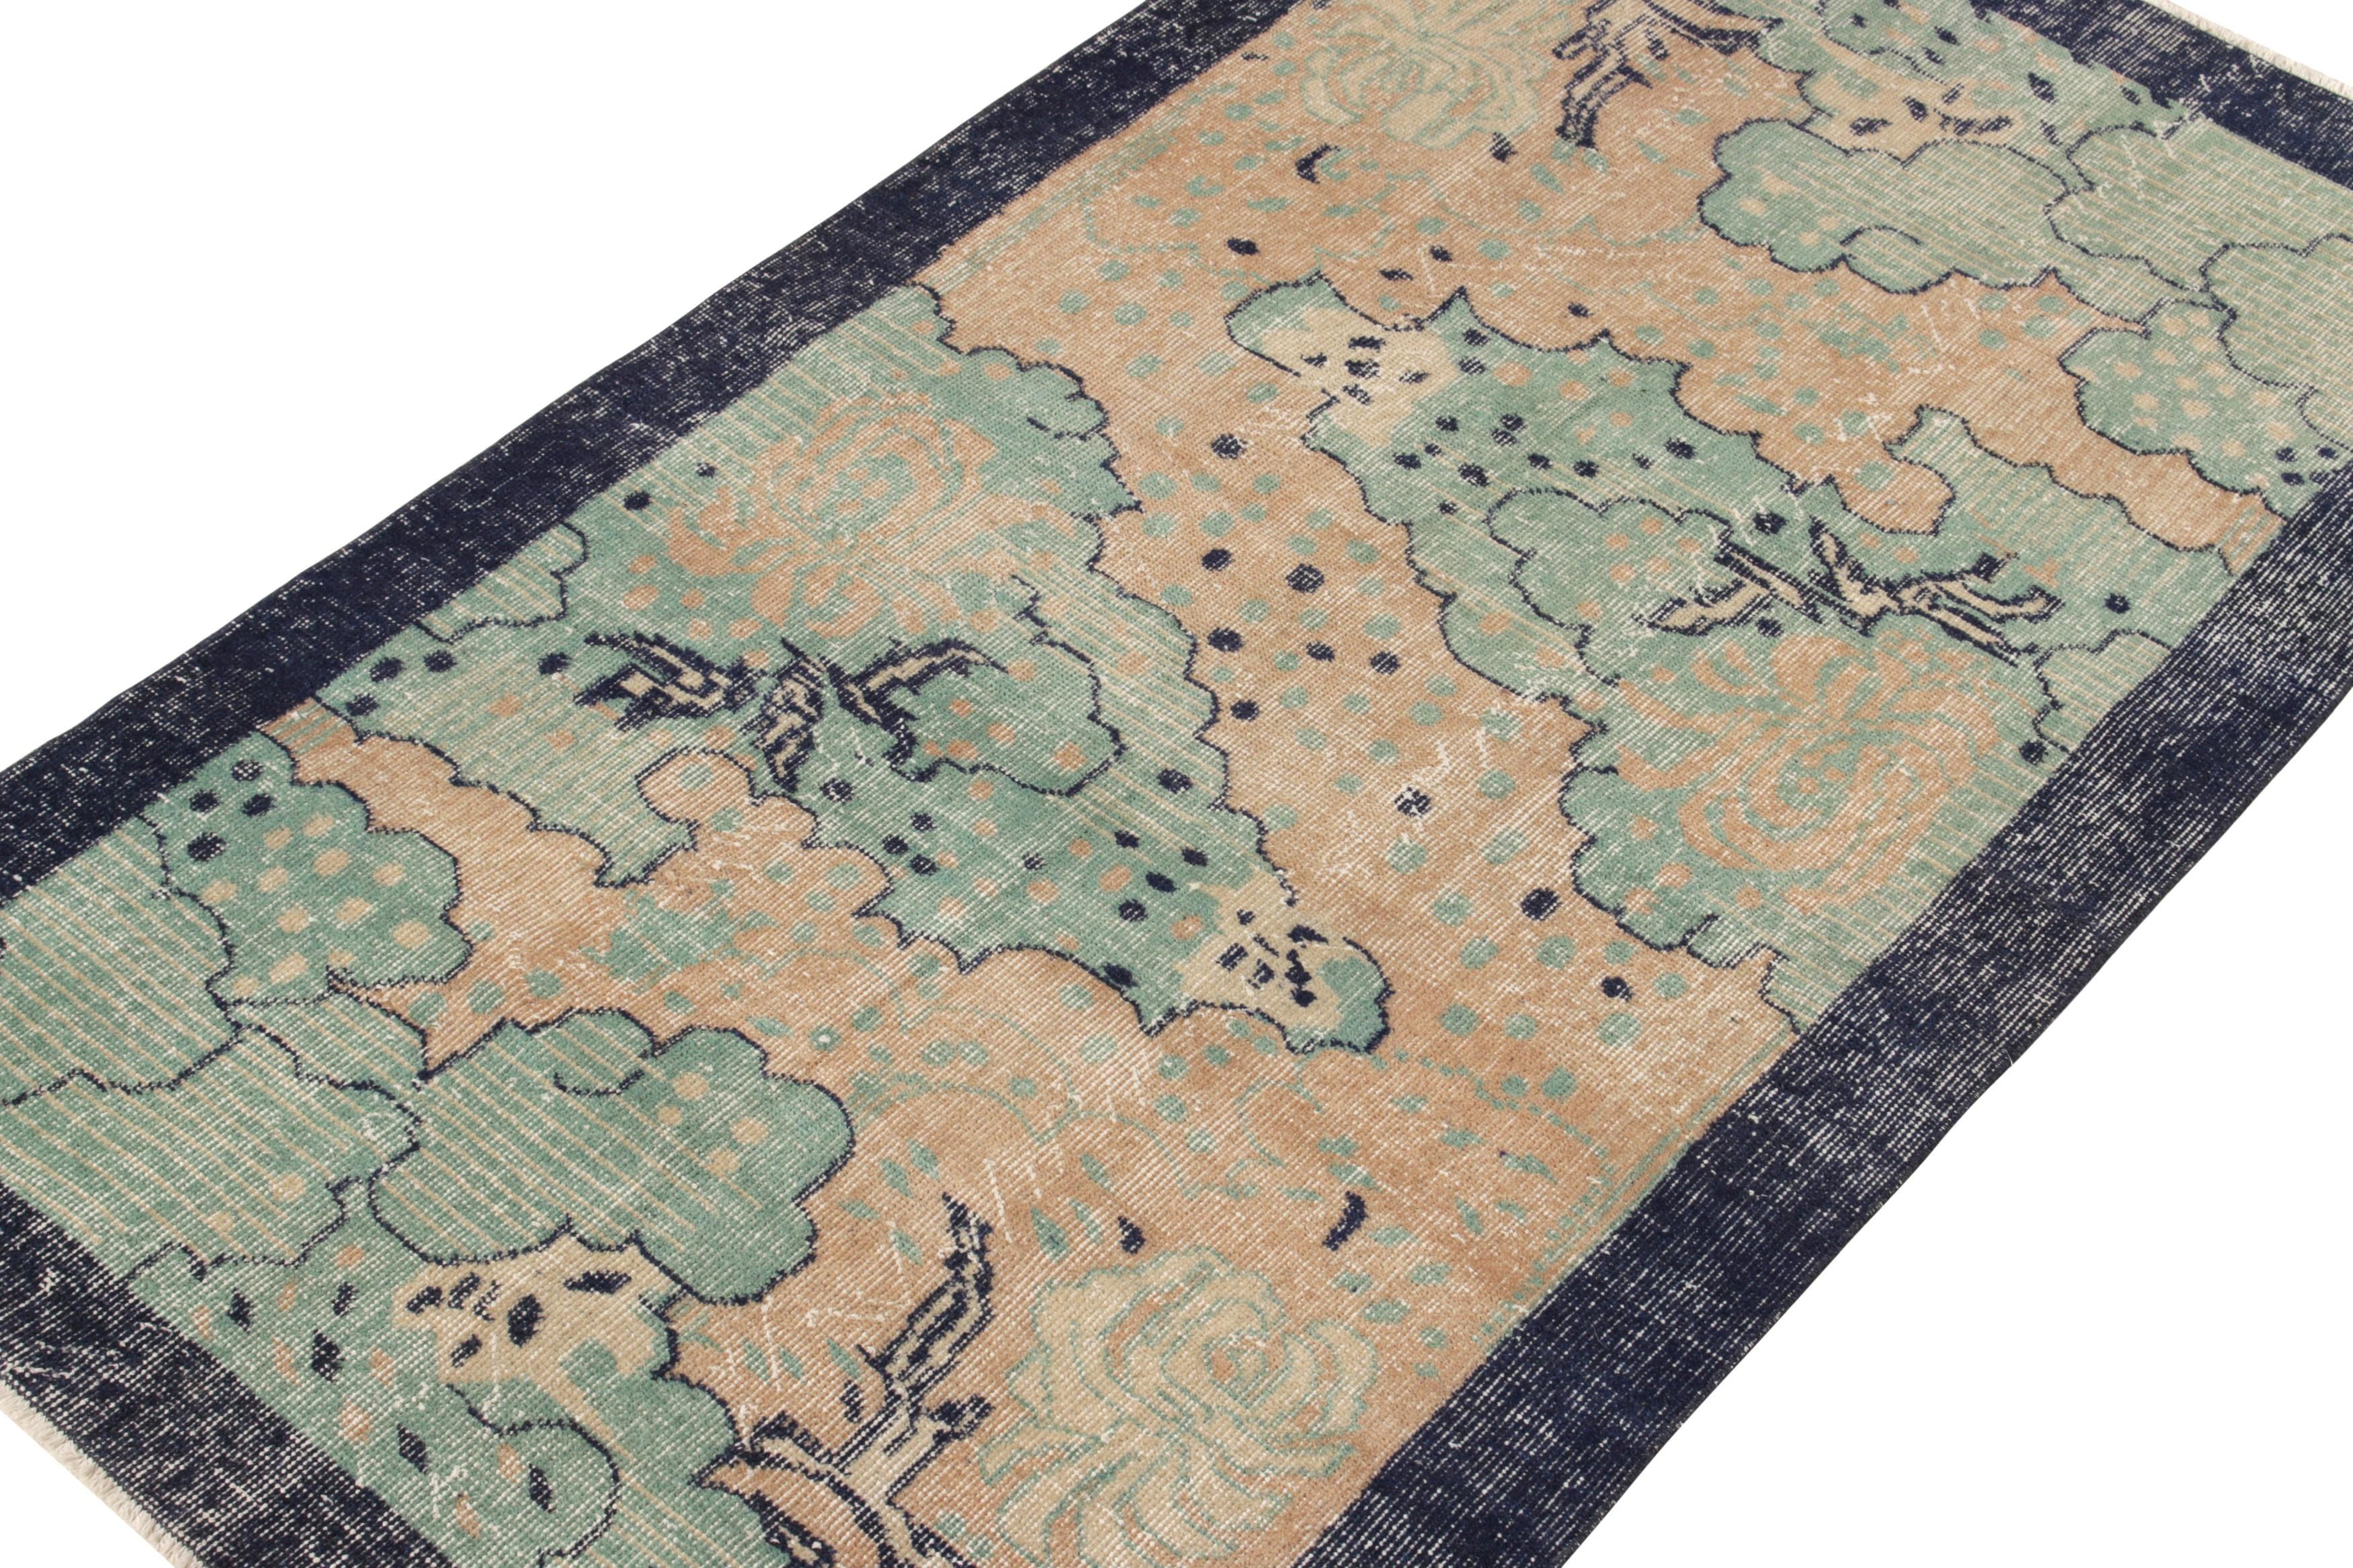 Dieser handgeknüpfte Teppich mit niedrigem, geschorenem Wollflor aus der Türkei (ca. 1960-1970) ist ein klassischer 4x7 Art-Déco-Teppich von ikonischer Herkunft aus der Mid-Century Pasha Collection von Rug & Kilim. Zum Gedenken an die gesammelten